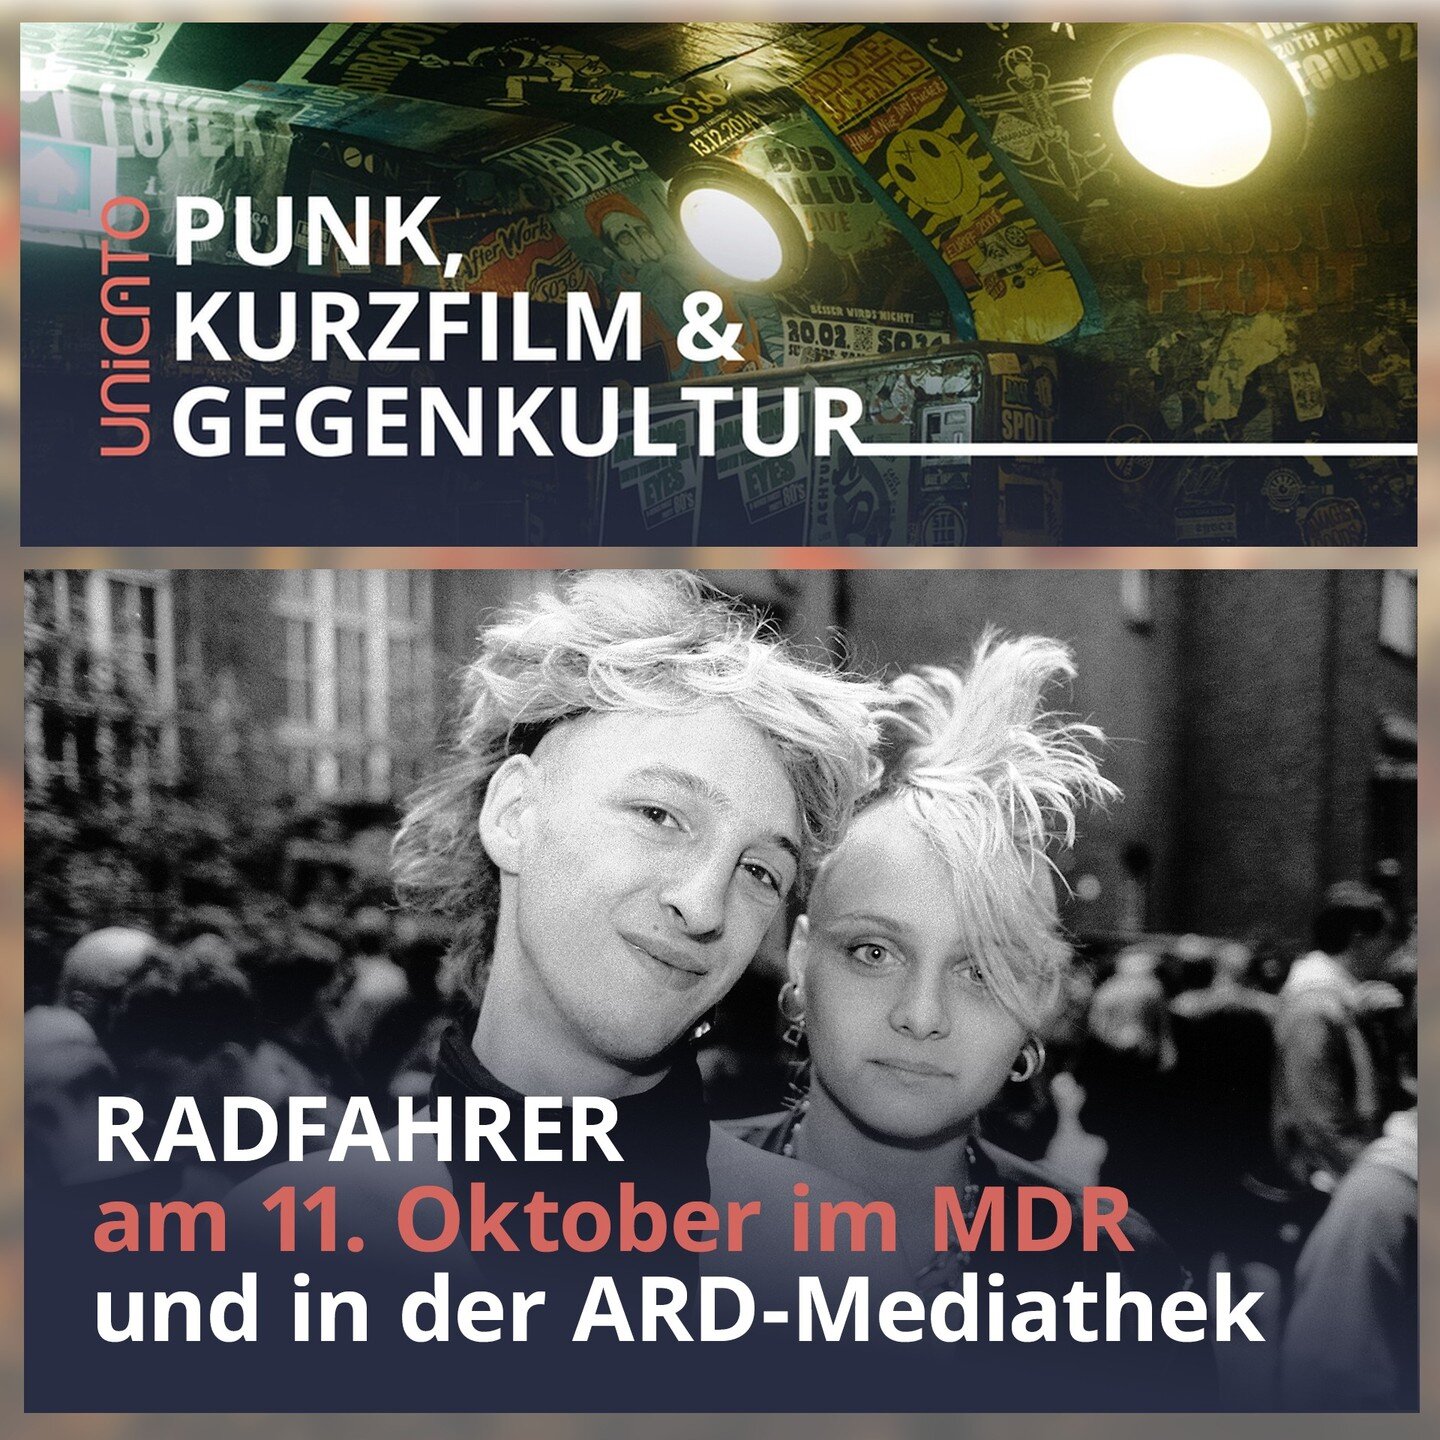 #Punk, #Kurzfilm &amp; #Gegenkultur! 🎥🖕🏼🧷 Das Kurzfilmmagazin @unicato.mdr mit @markus_kavka zeigt meine @haraldhauswald -Doku RADFAHRER als Filmtipp &ndash; heute Nacht um 0:25 Uhr im MDR und schon jetzt in der @ardmediathek 

📺 link in bio

@m